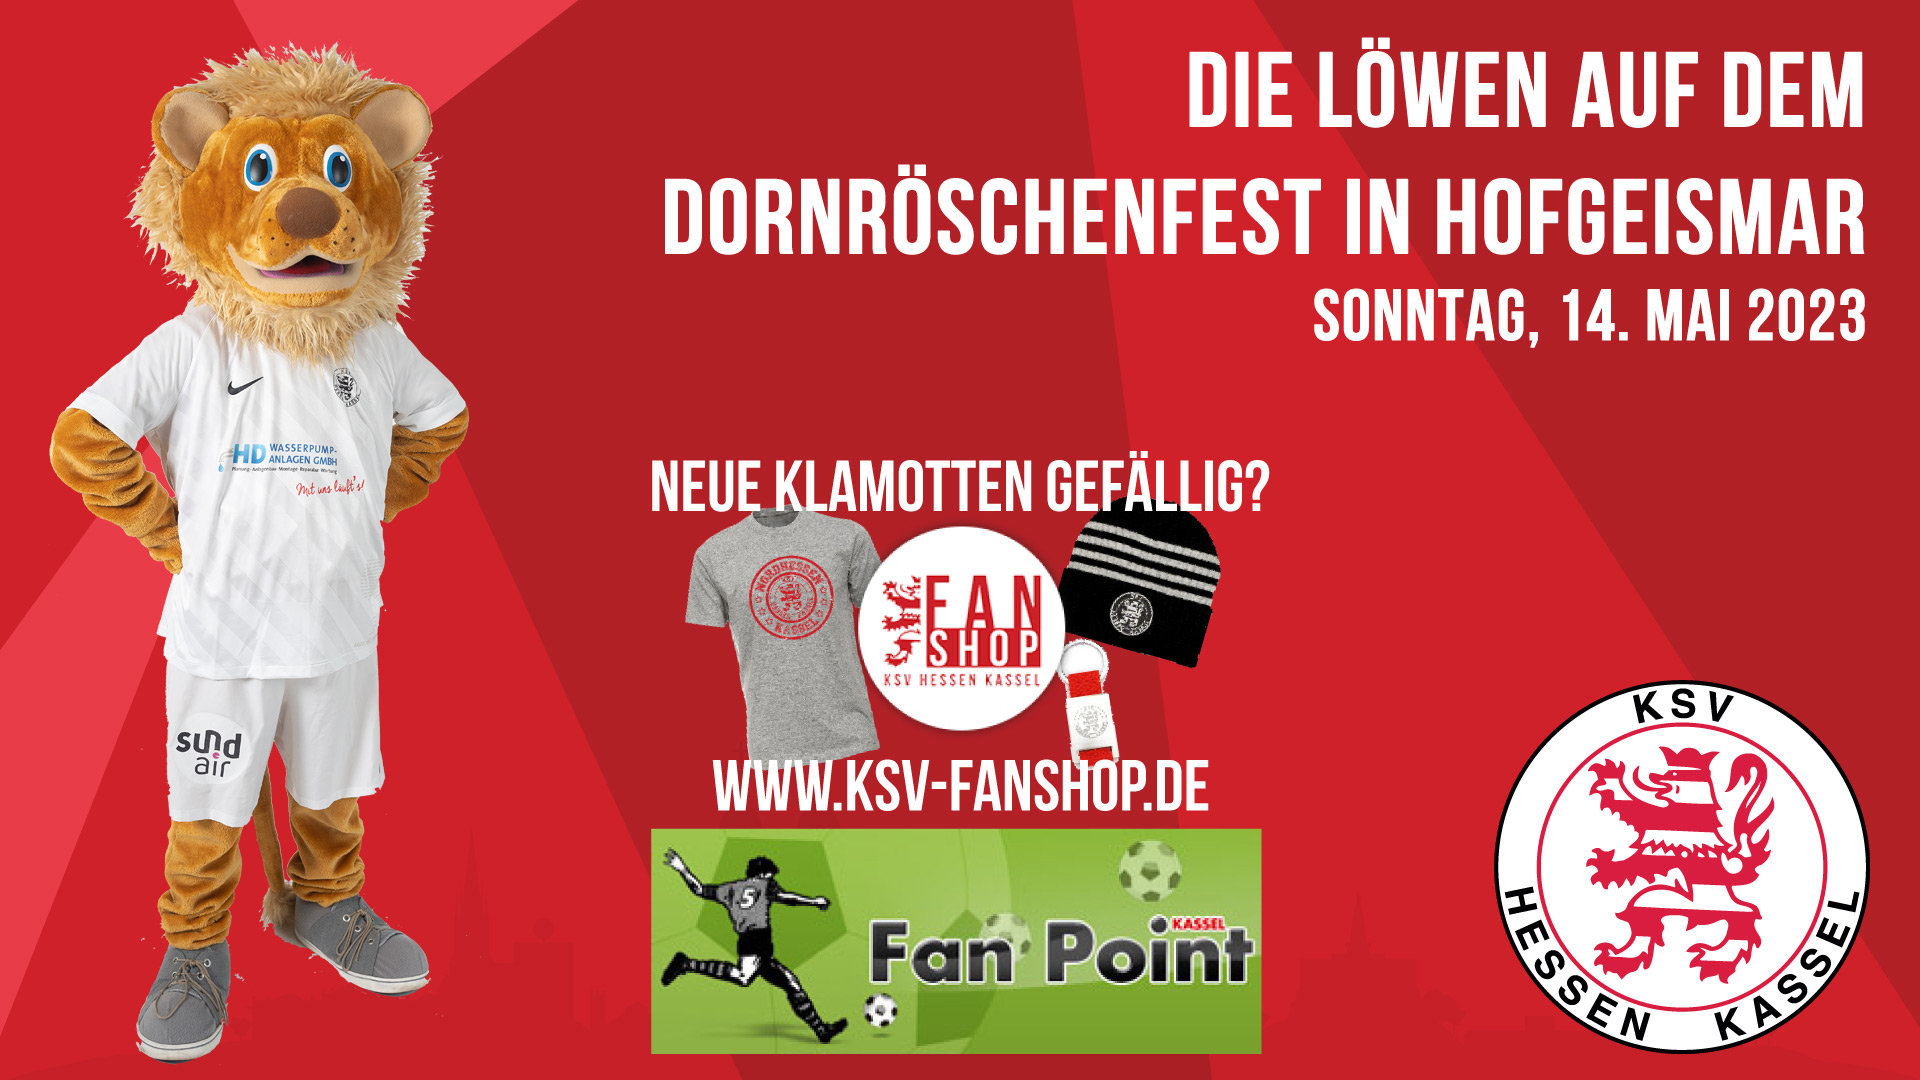 Dornröschenfest in Hofgeismar am Sonntag, 14. Mai 2023